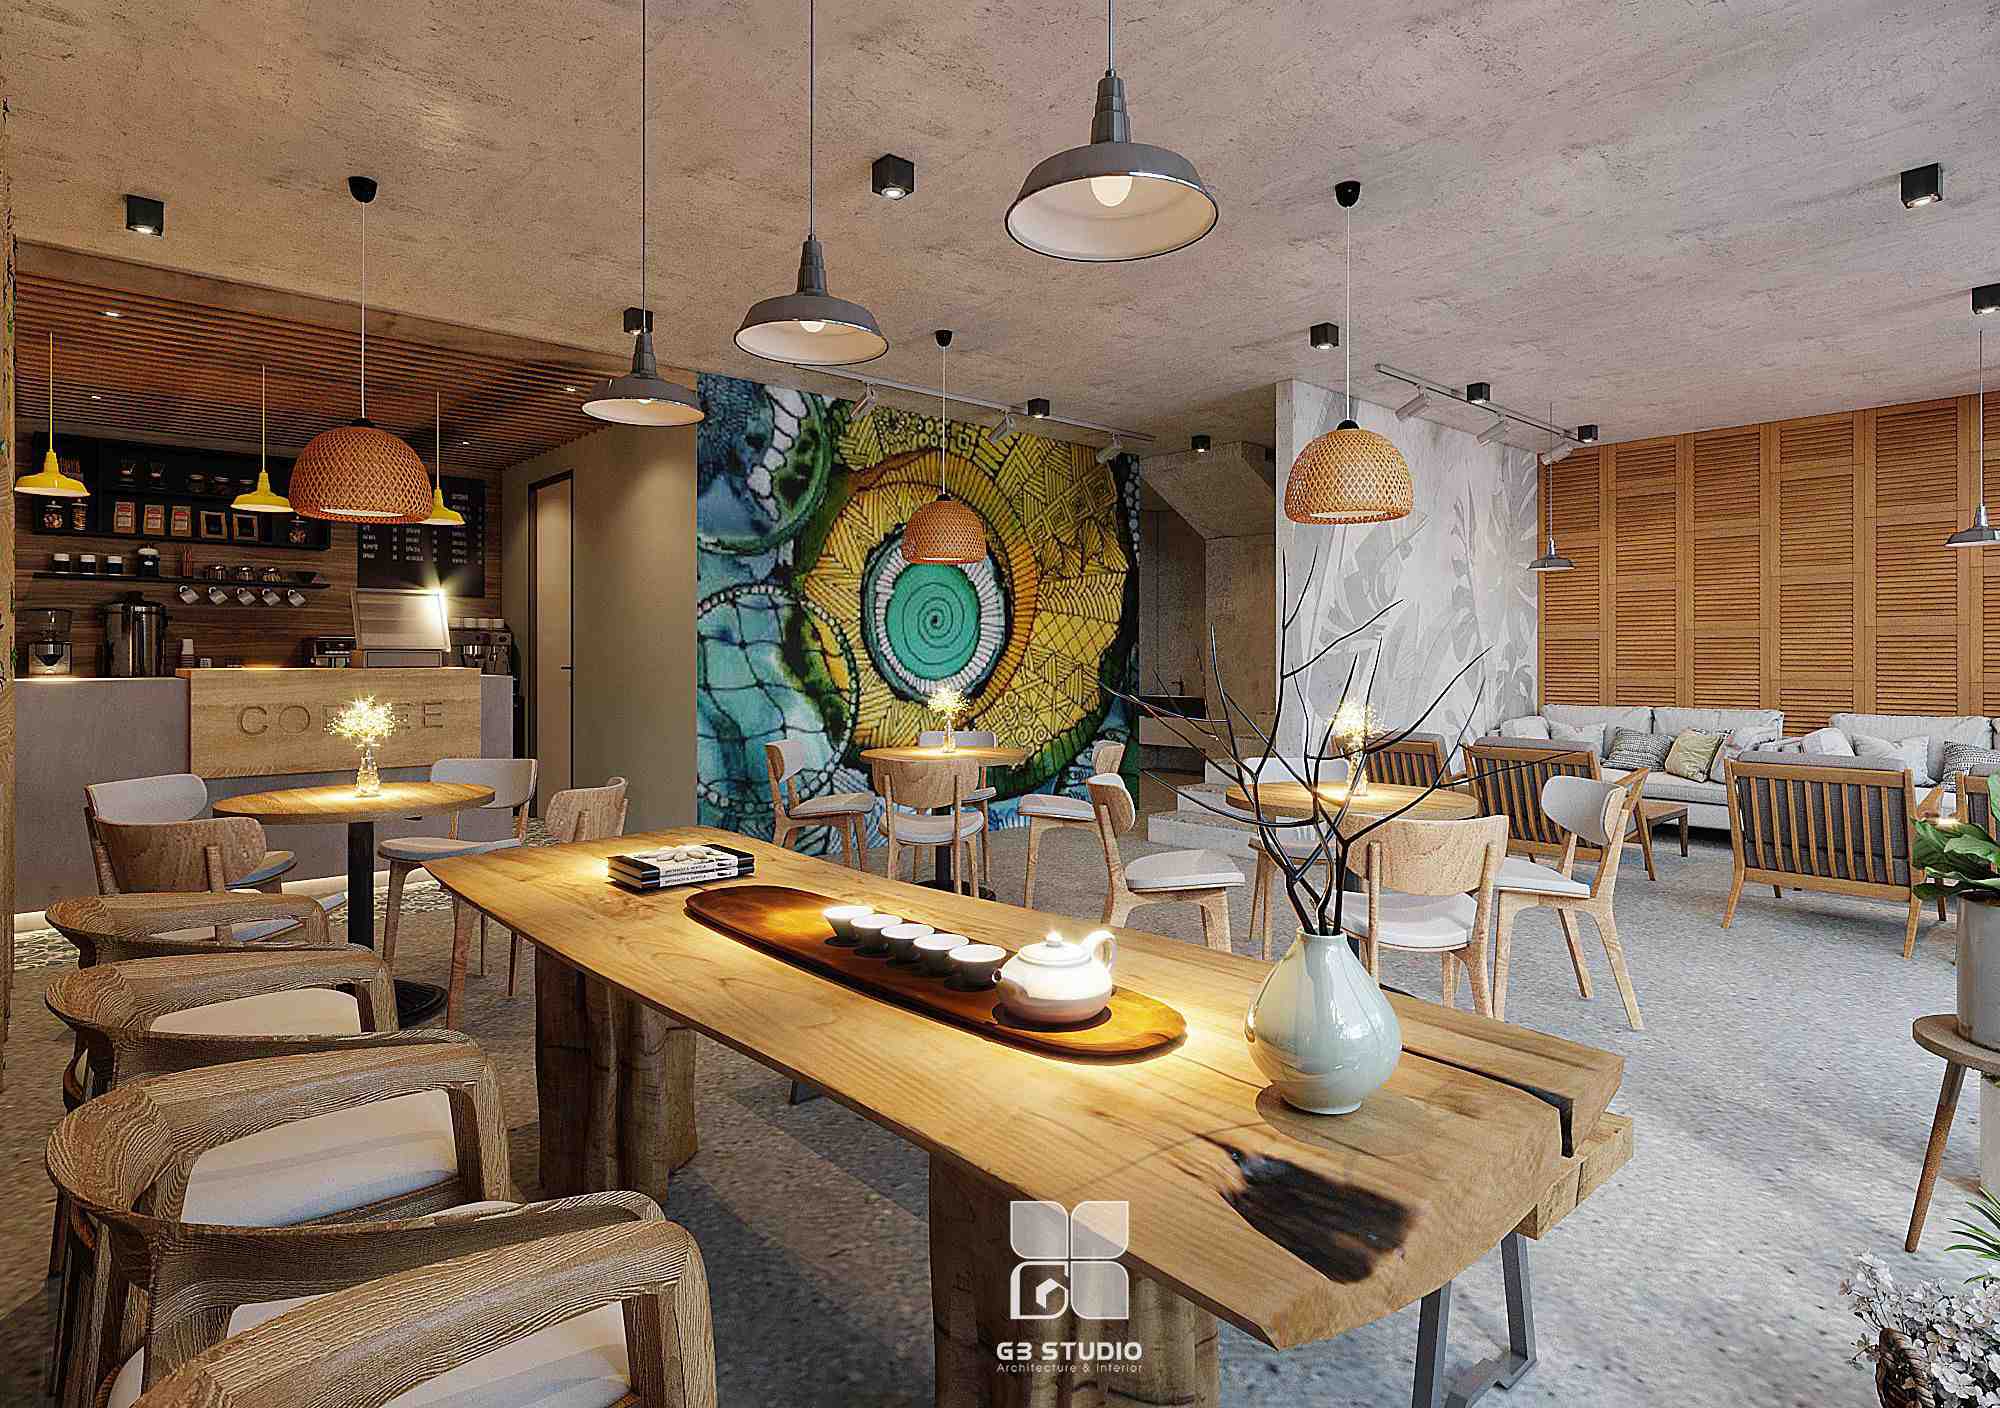 Thiết kế nội thất Cafe tại Thái Nguyên Cafe Góc Xóm 1596099640 6